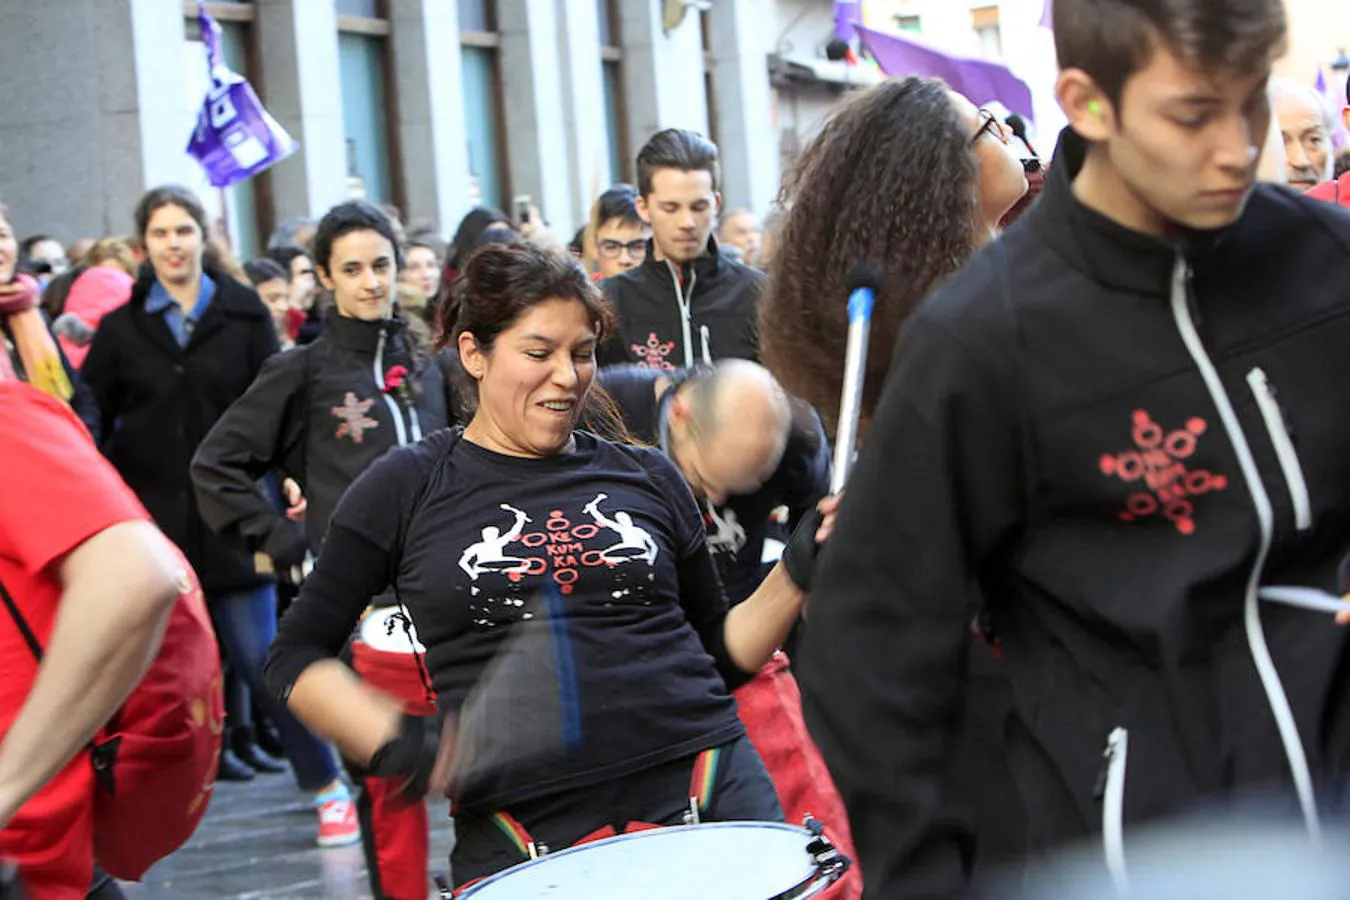 Manifestación histórica en Toledo por la igualdad